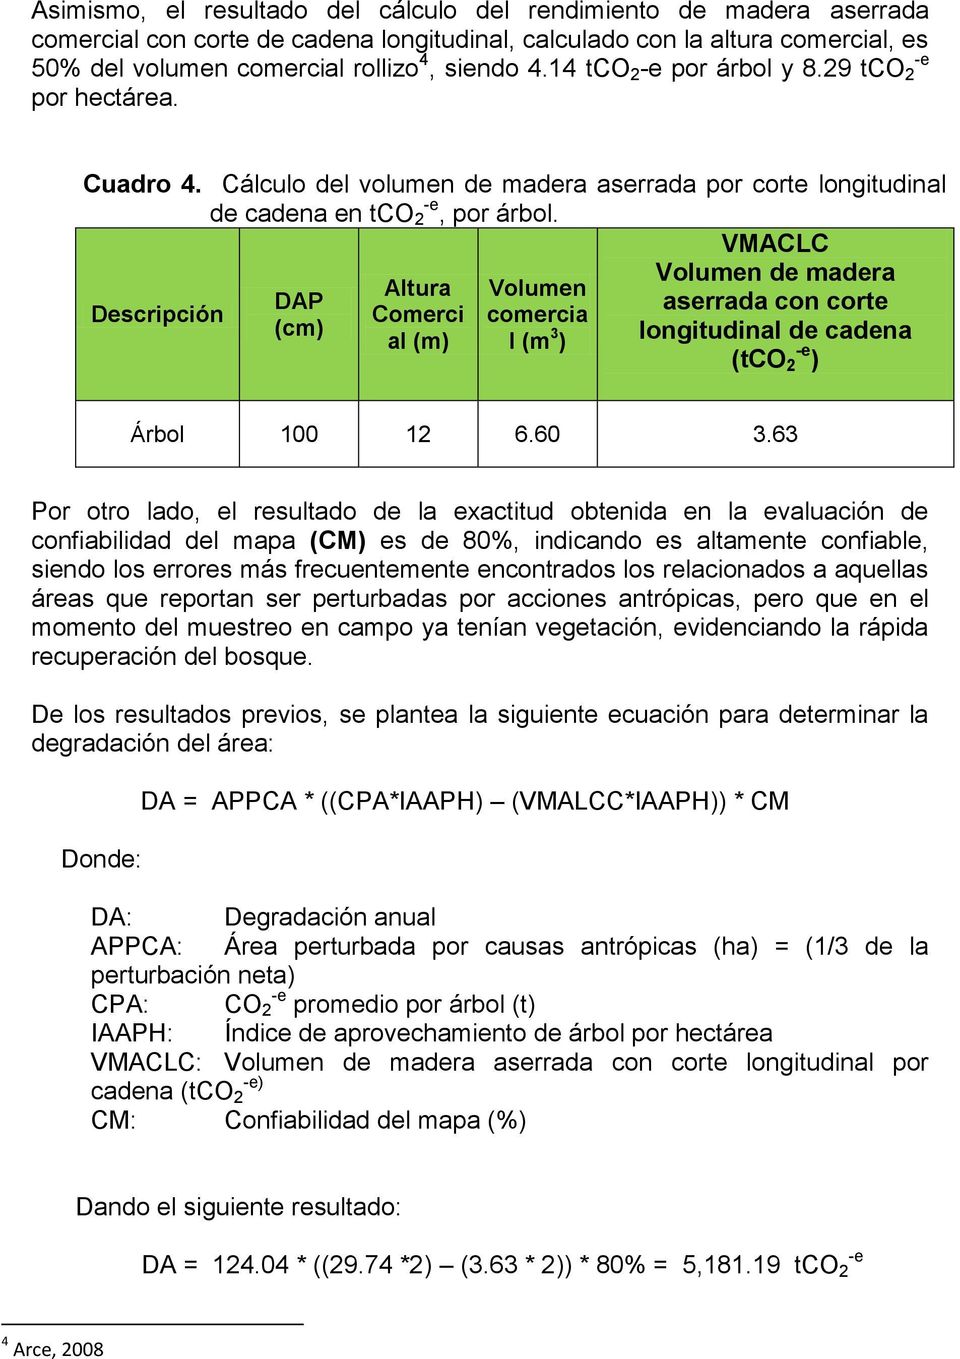 VMACLC Volumen de madera Altura Volumen DAP aserrada con corte Descripción Comerci comercia (cm) al (m) l (m 3 ) longitudinal de cadena (tco -e 2 ) Árbol 100 12 6.60 3.